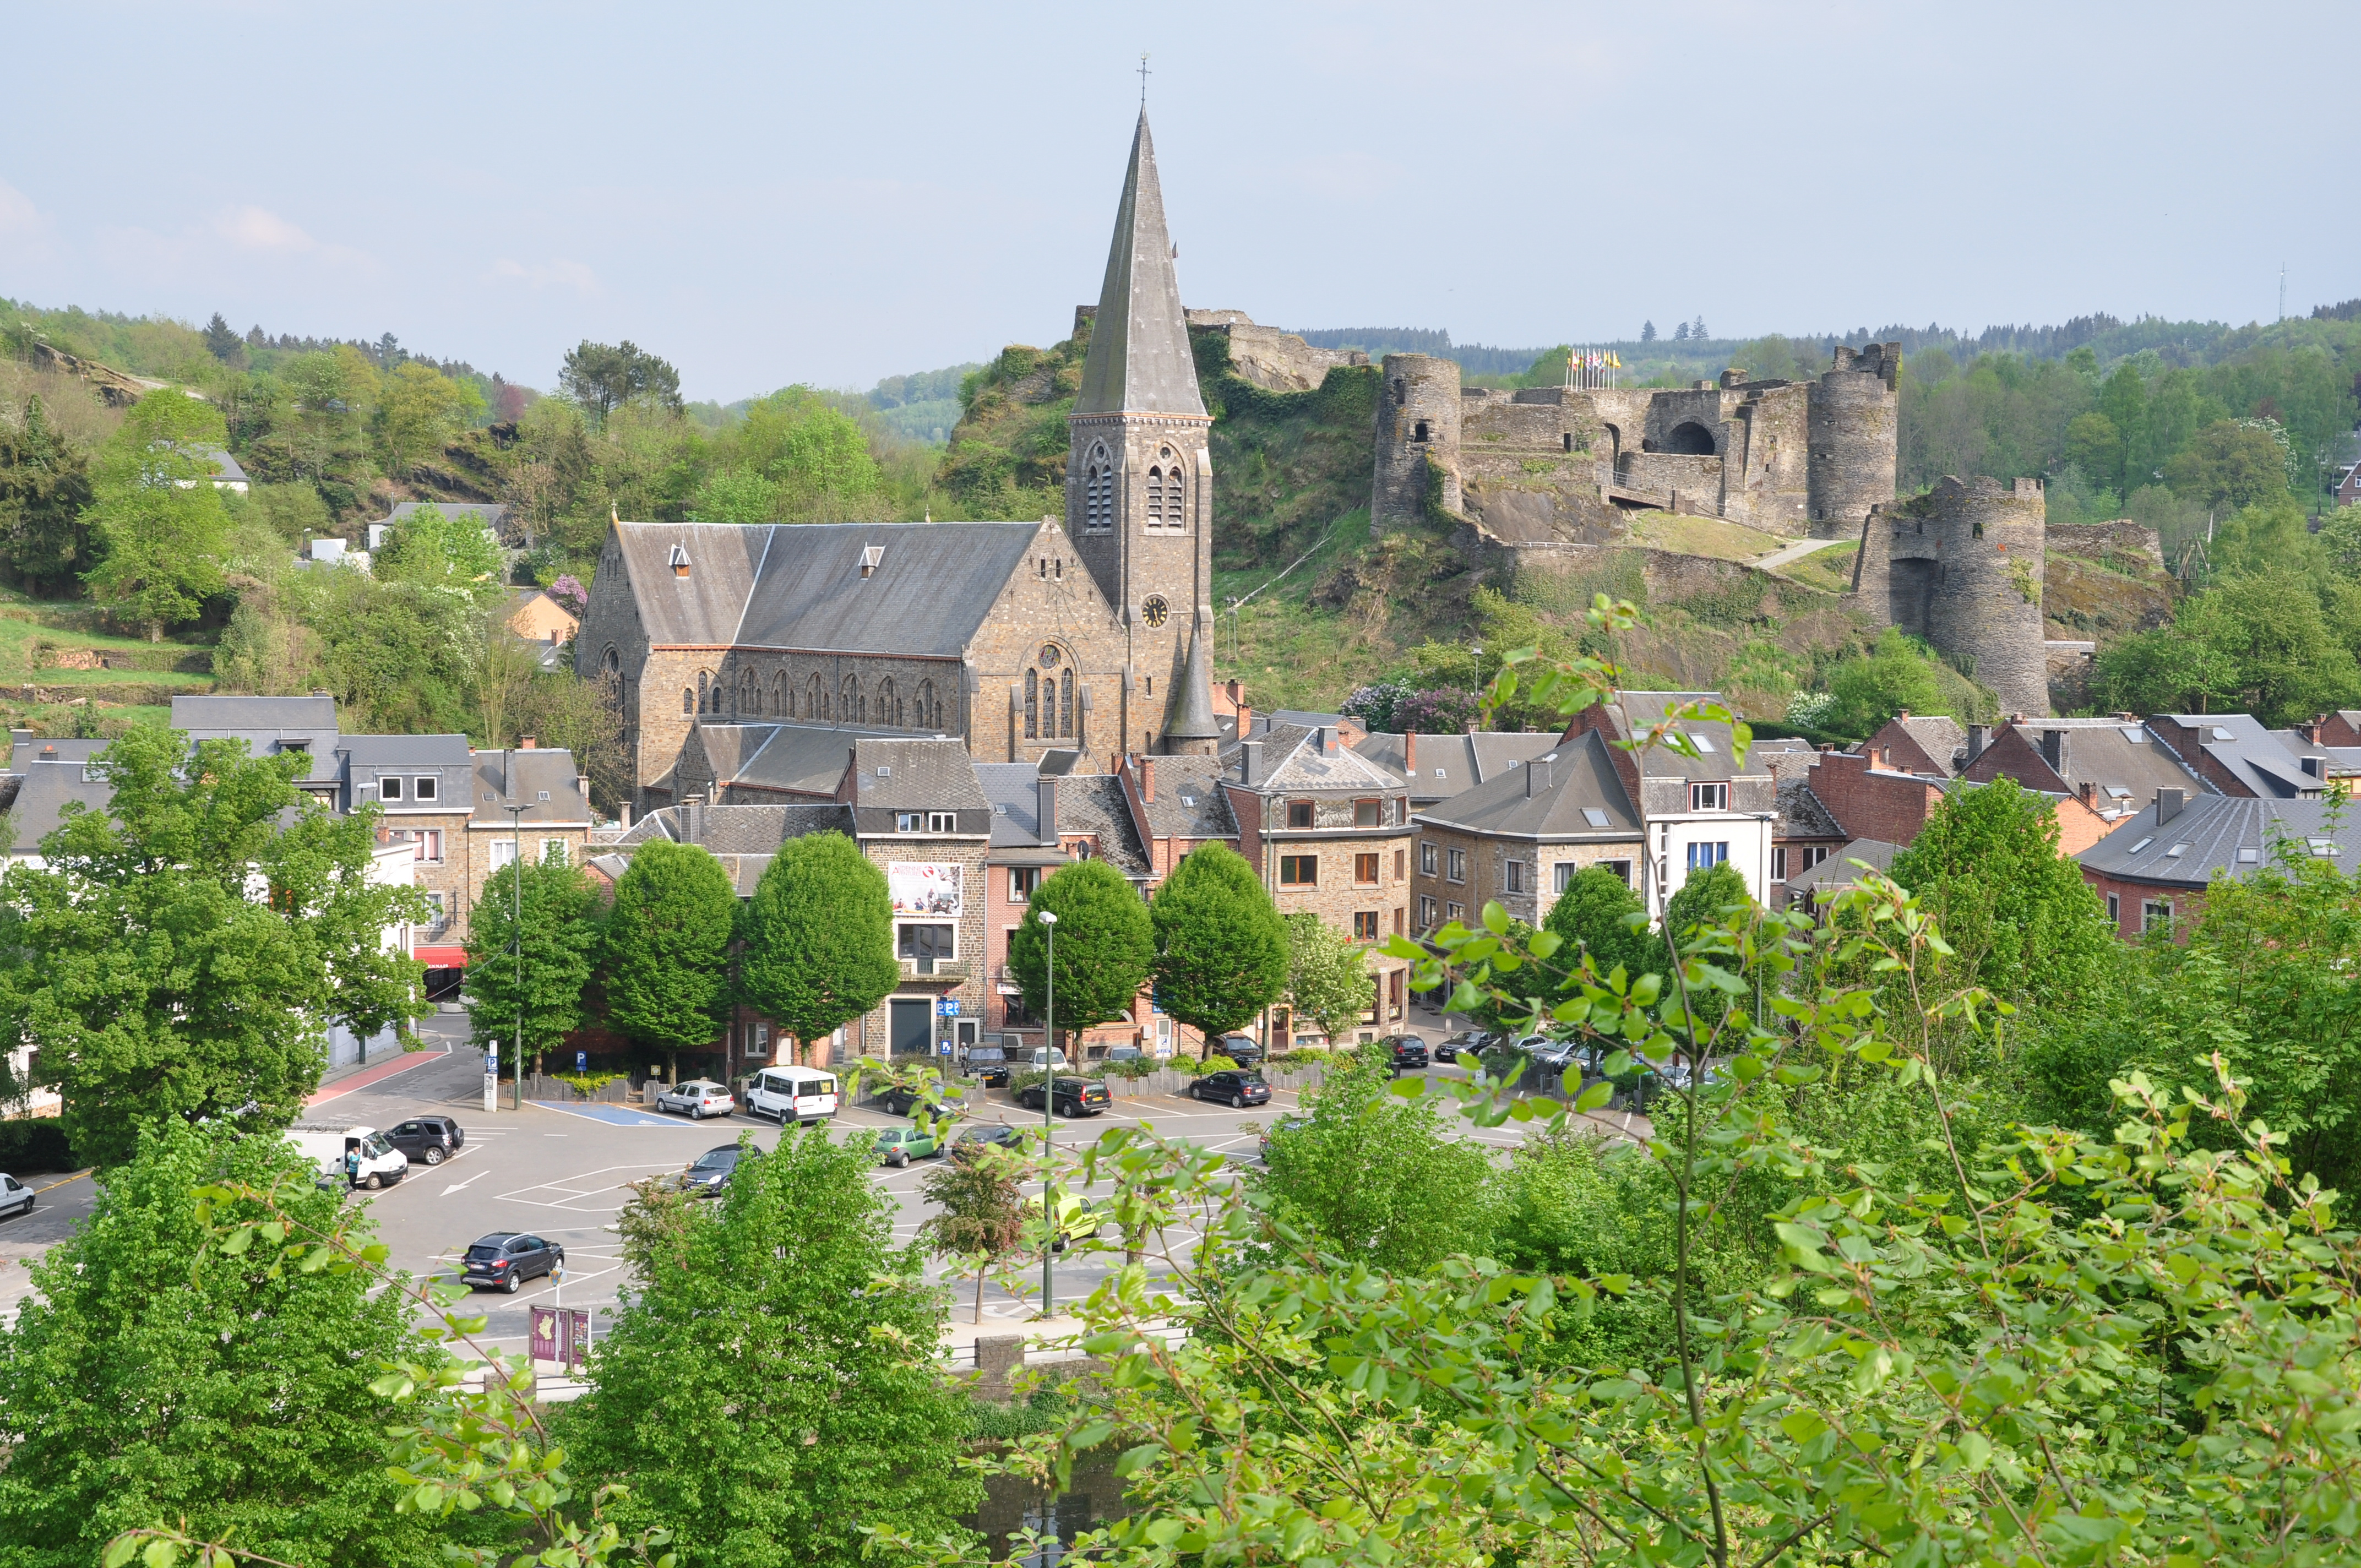 Ontdek het prachtige kasteel van La Roche-en-Ardennen in de provincie Luxemburg